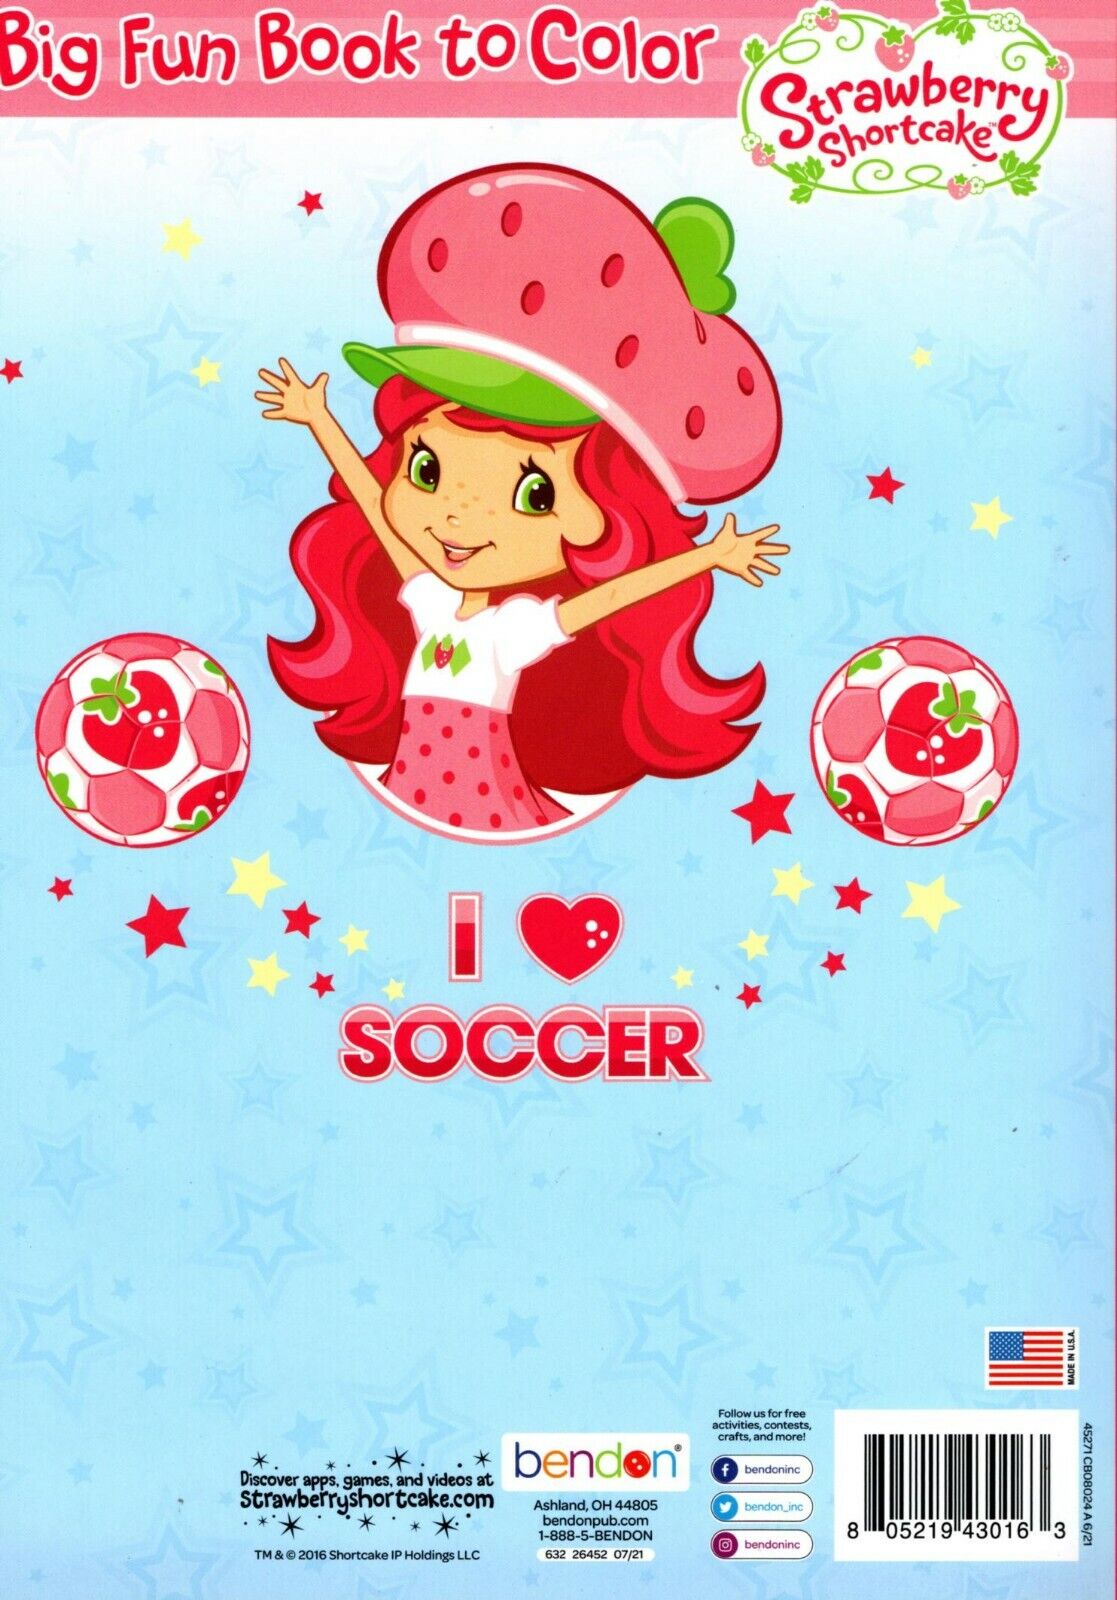 Strawberry Shortcake - Big Fun Book to Color - I Love Soccer